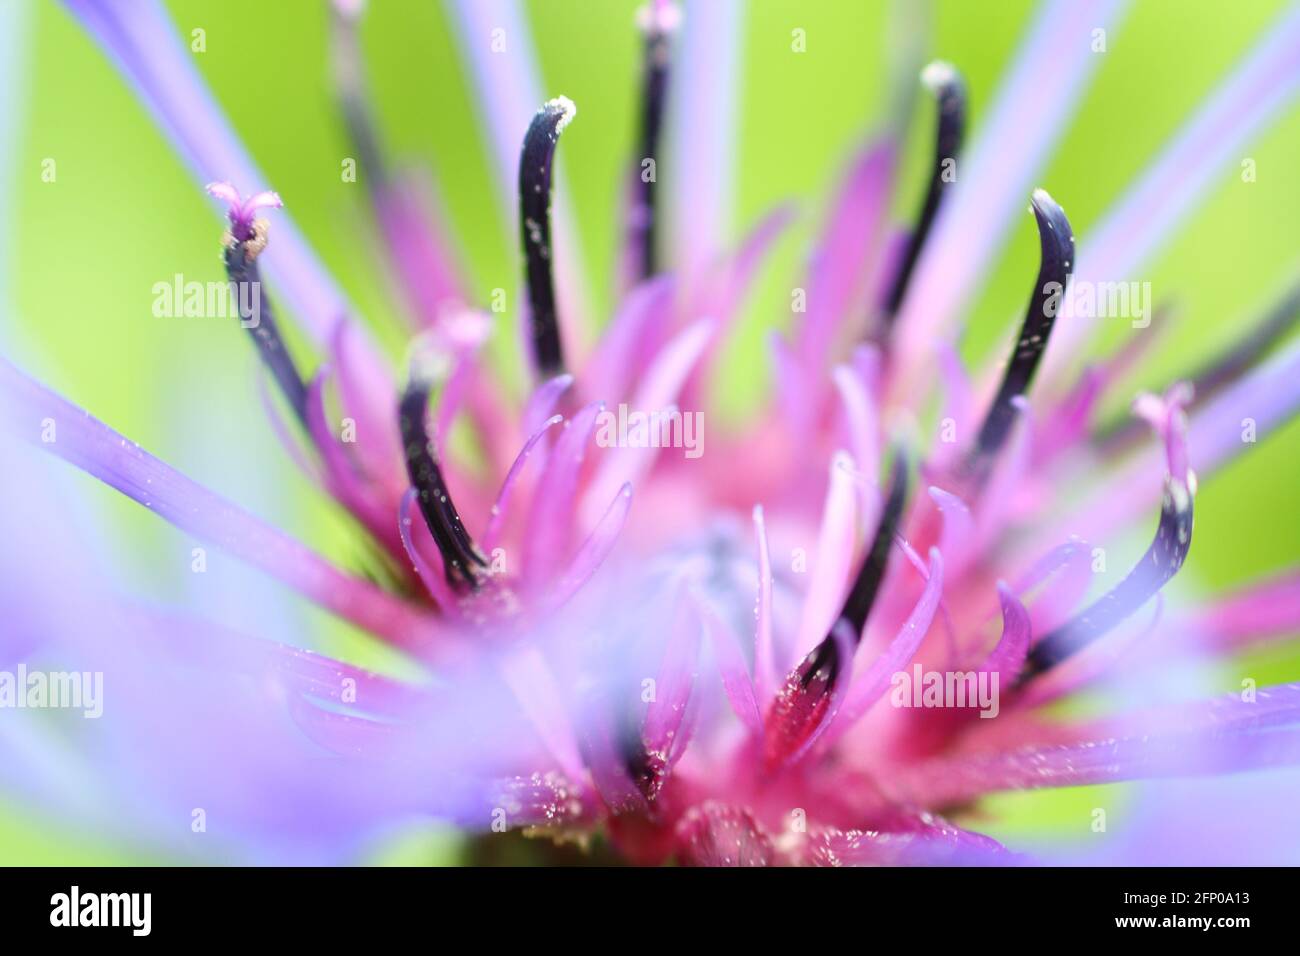 Macro gros plan du centre d'une fleur de maïs violet-bleu, montrant les étamines et le pollen. Très courte profondeur de champ et mise au point sélective. Banque D'Images